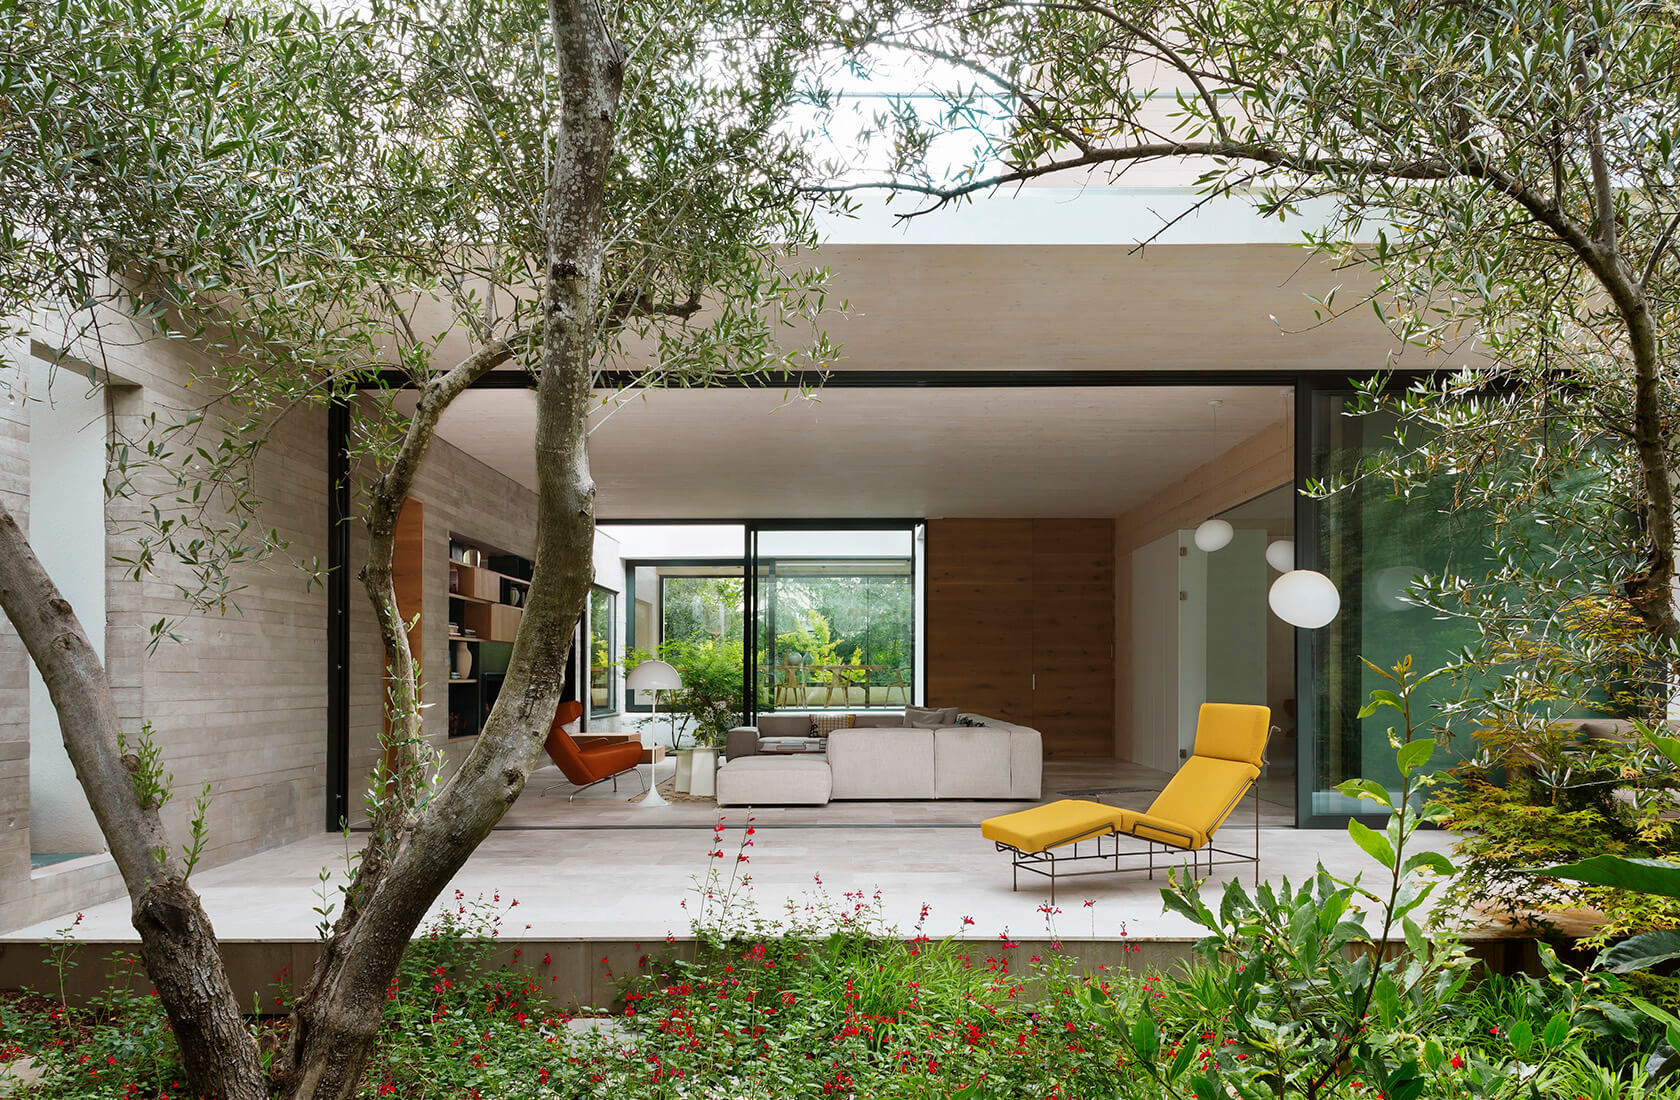 Casa Proyecto CH - Espanha. Sala de estar vista do jardim com sofa grande e cinza, poltrona couro marrom, tapete bege com preto, laje de concreto aparente, poltrona em couro marrom, chaise amarela na varanda.